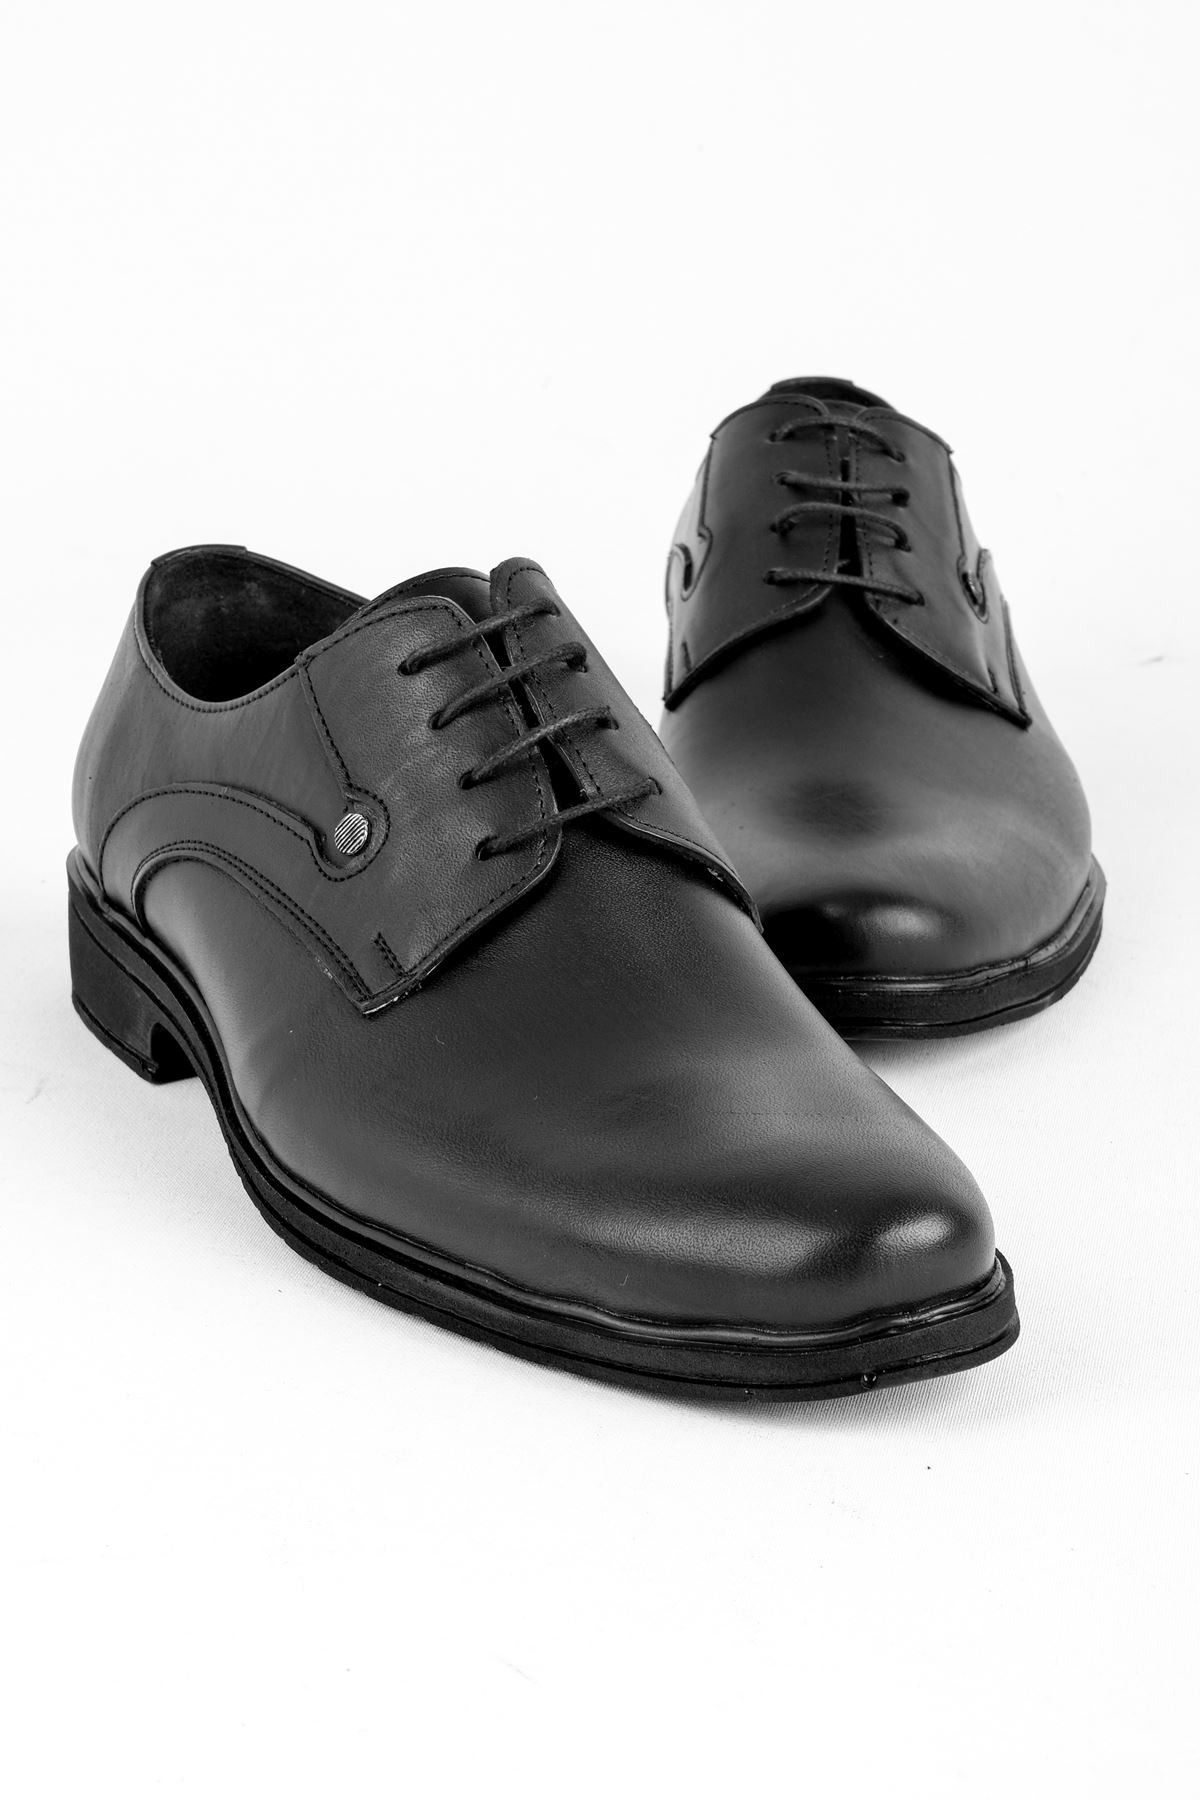 Keira Erkek Hakiki Deri Sivri Burun Klasik Ayakkabı-siyah